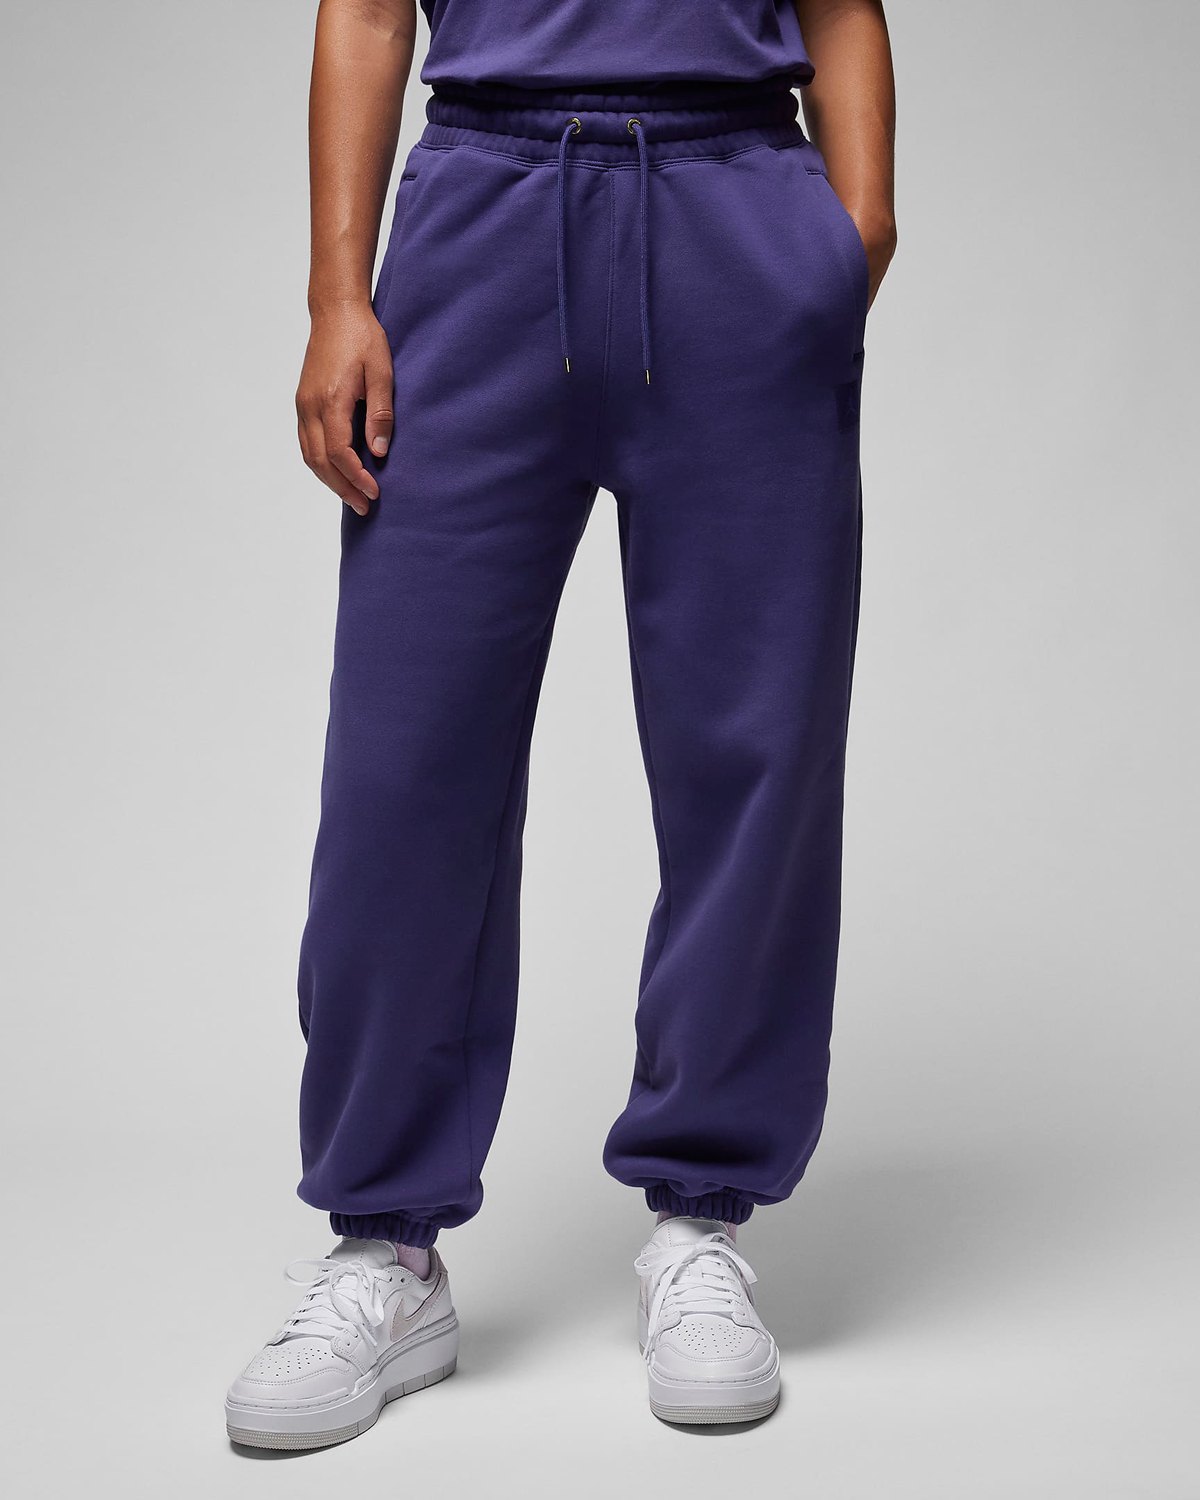 Jordan-Flight-Fleece-Womens-Pants-Sky-J-Purple